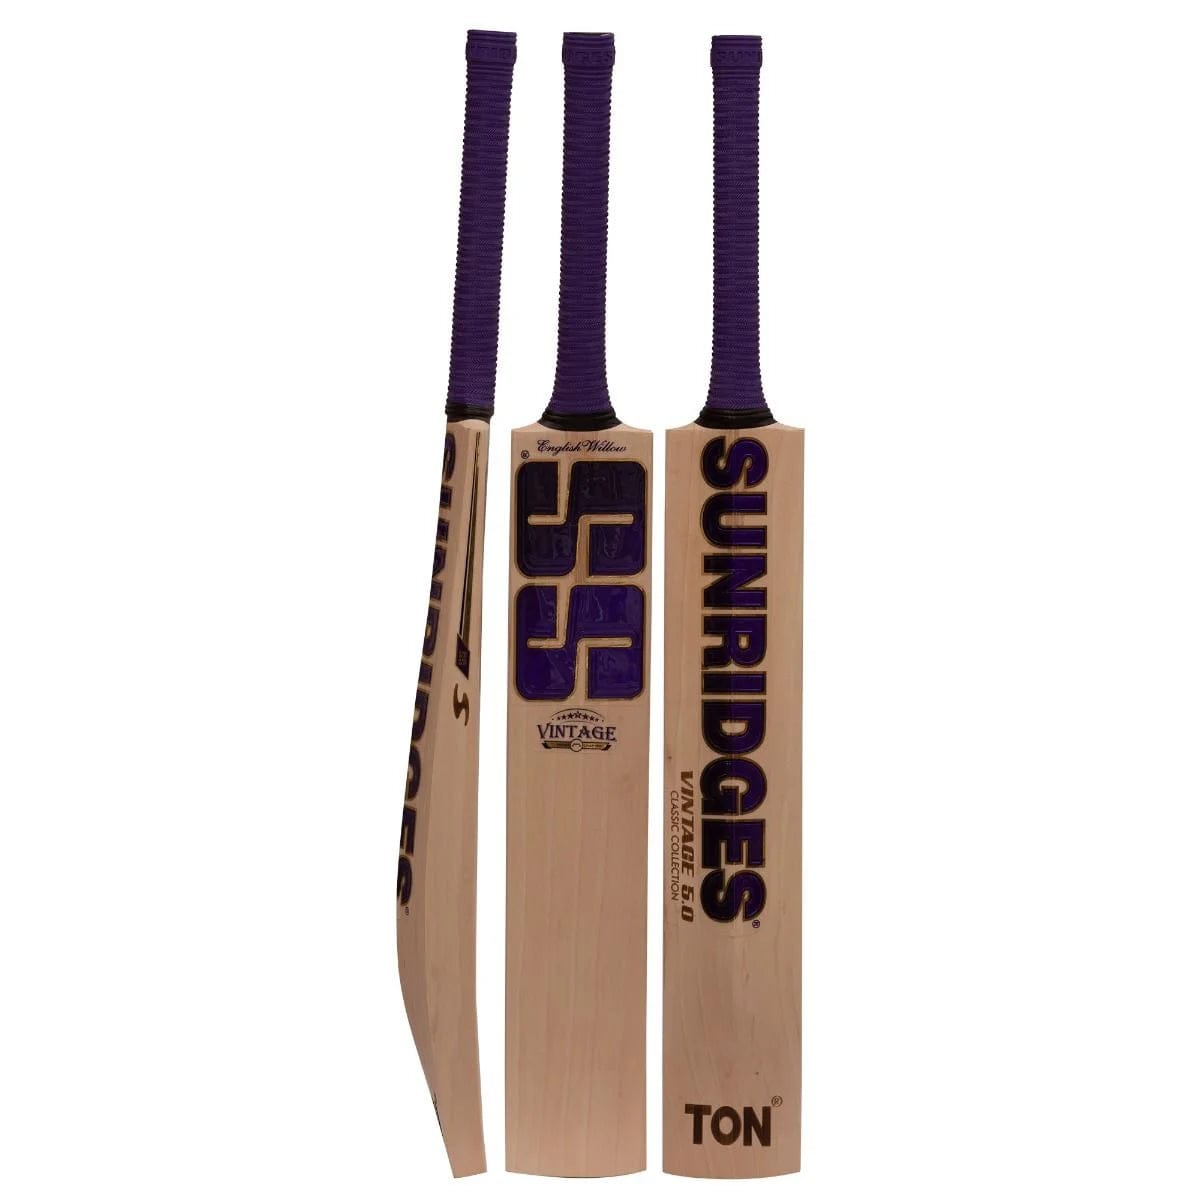 SS Cricket Bats Short Hand / Medium 2lbs 8oz - 2lbs 10oz SS Vintage 5.0 Adult Cricket Bat